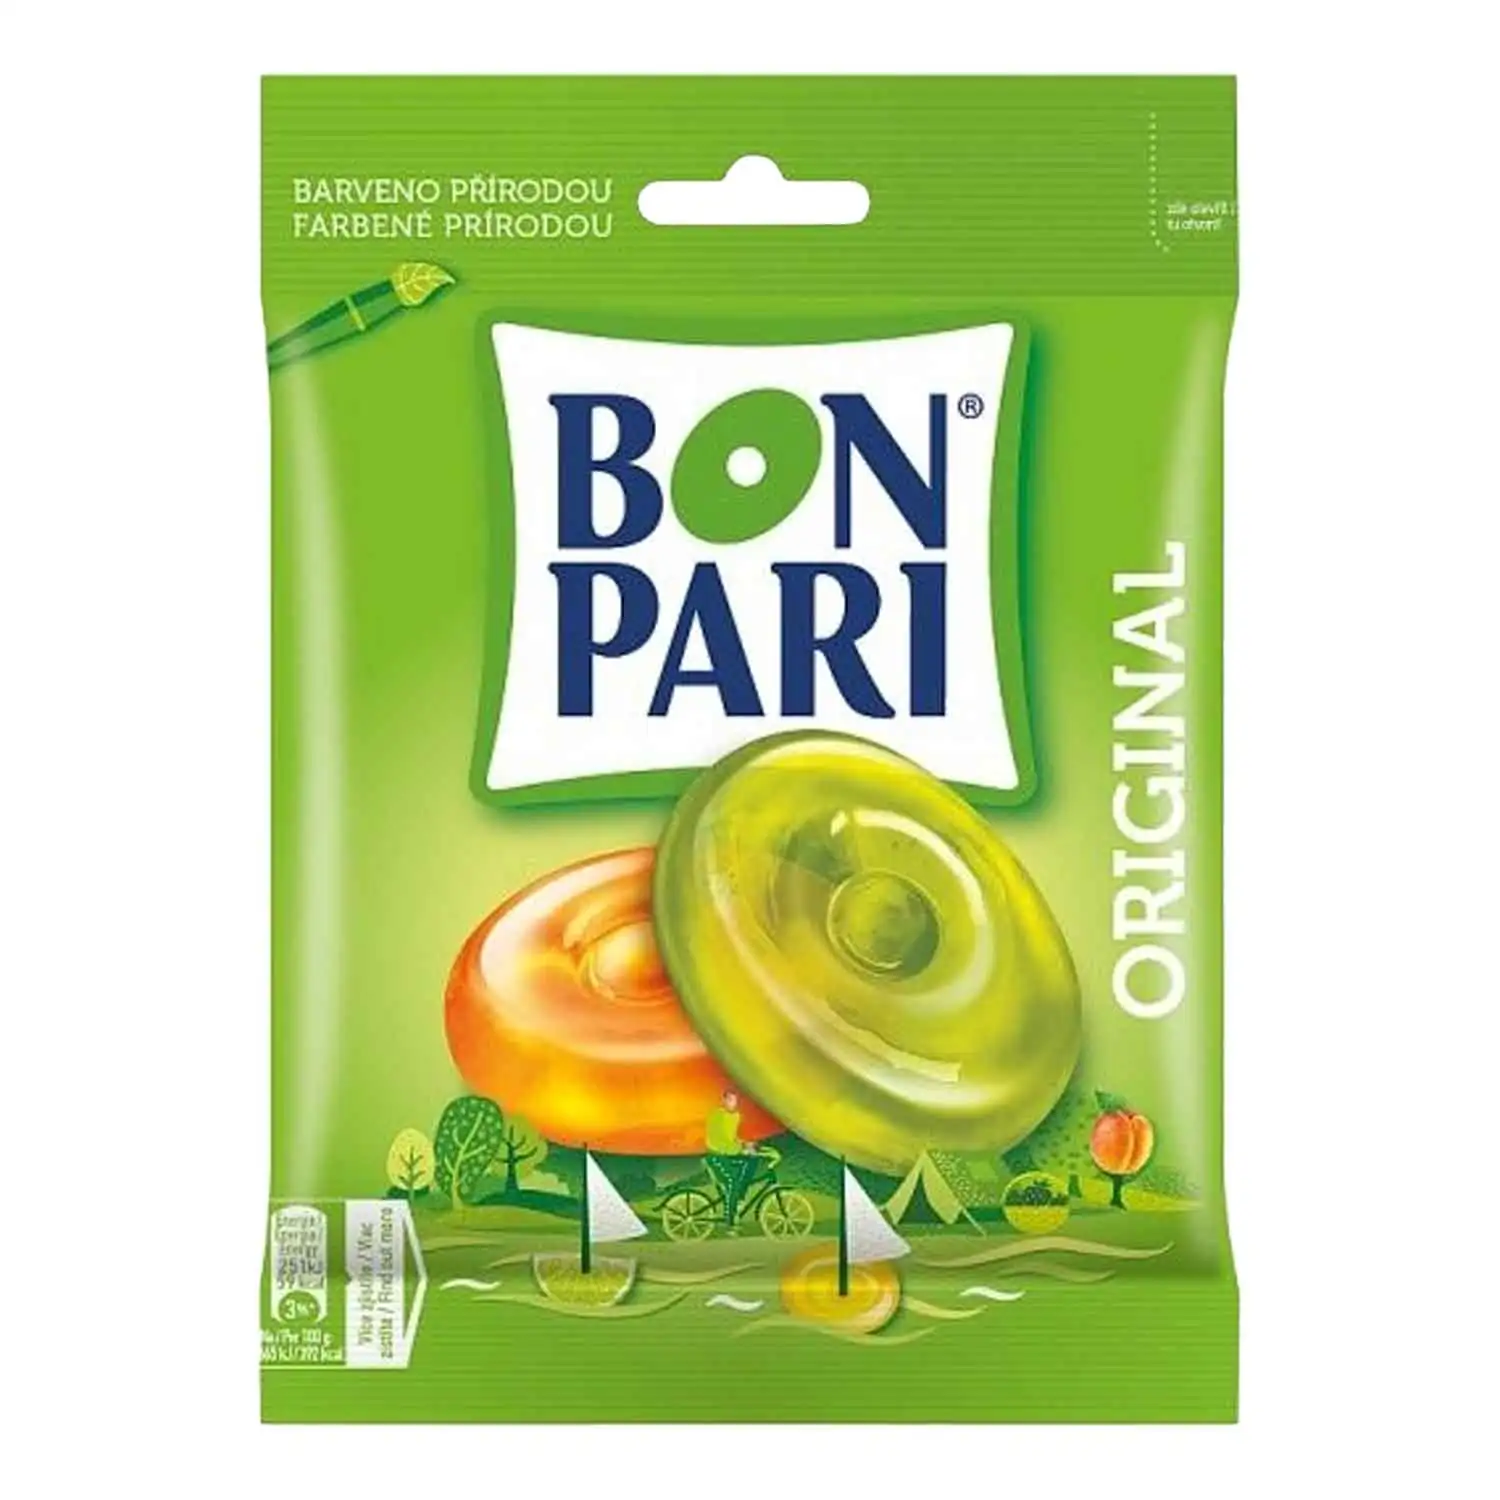 Bon Pari original 90g - Buy at Real Tobacco